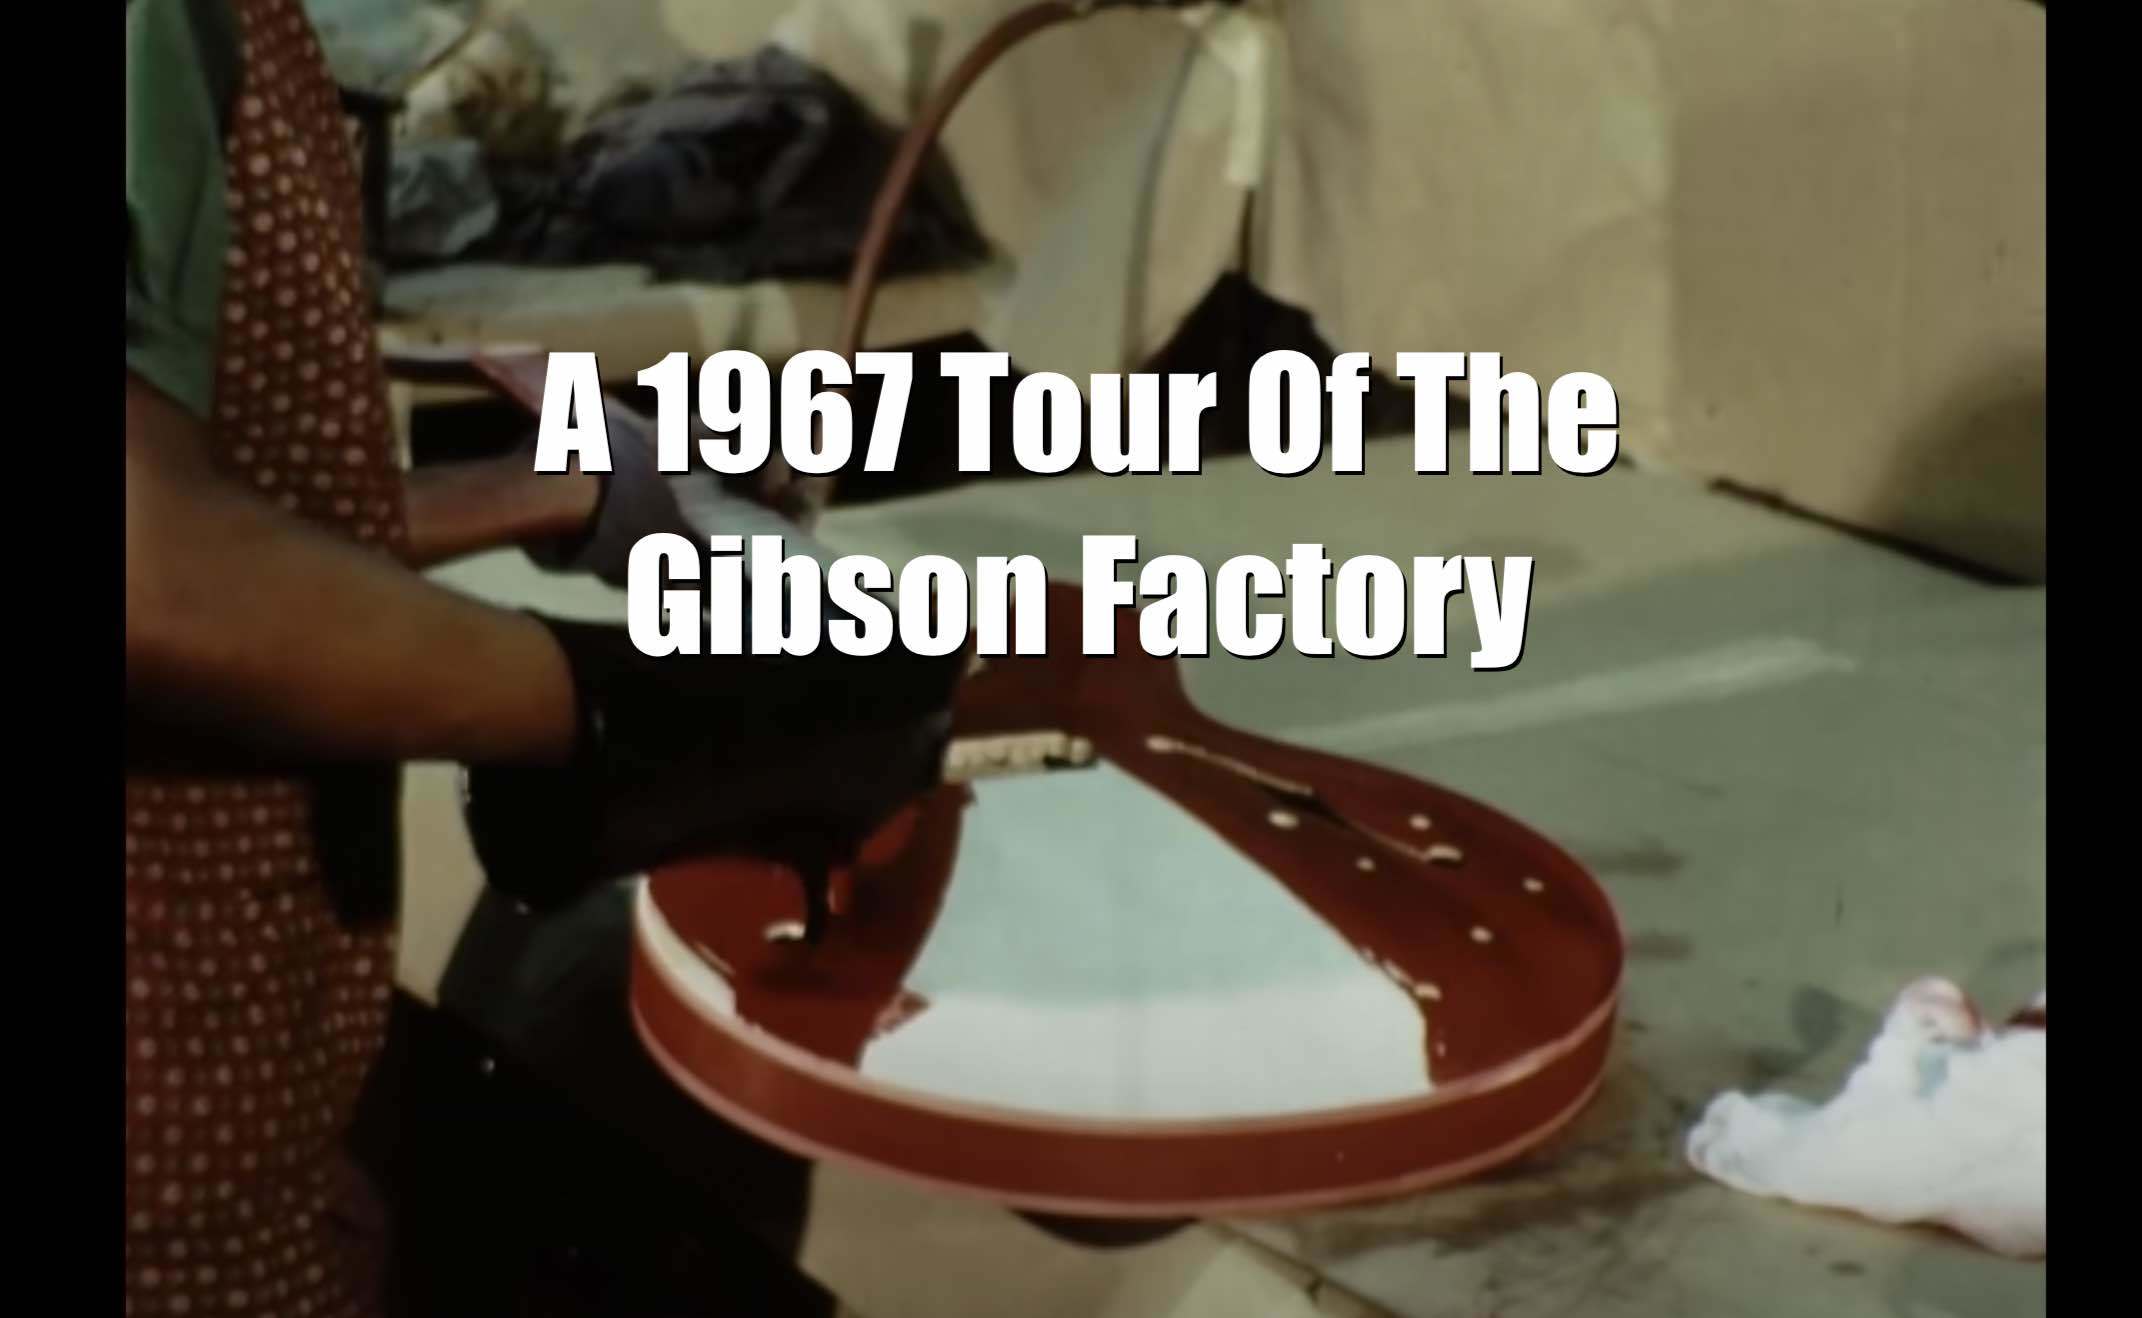 gibson factory tour 1967